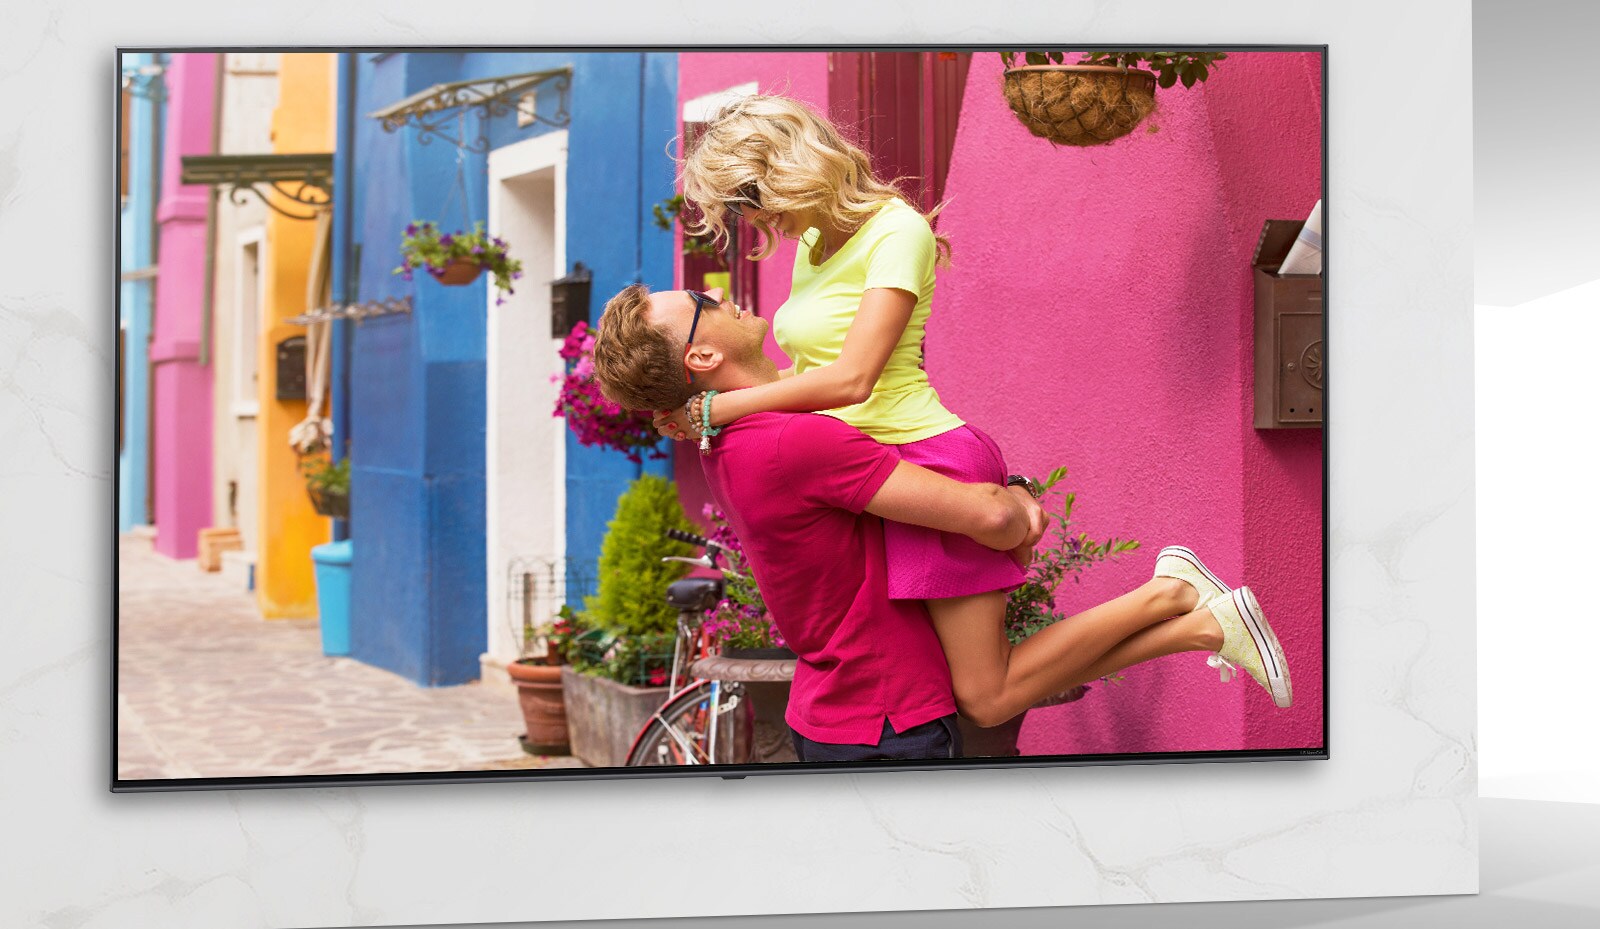 Lo schermo televisivo accoglie la scena di un film romantico ricco di colori con un uomo e una donna in un abbraccio.